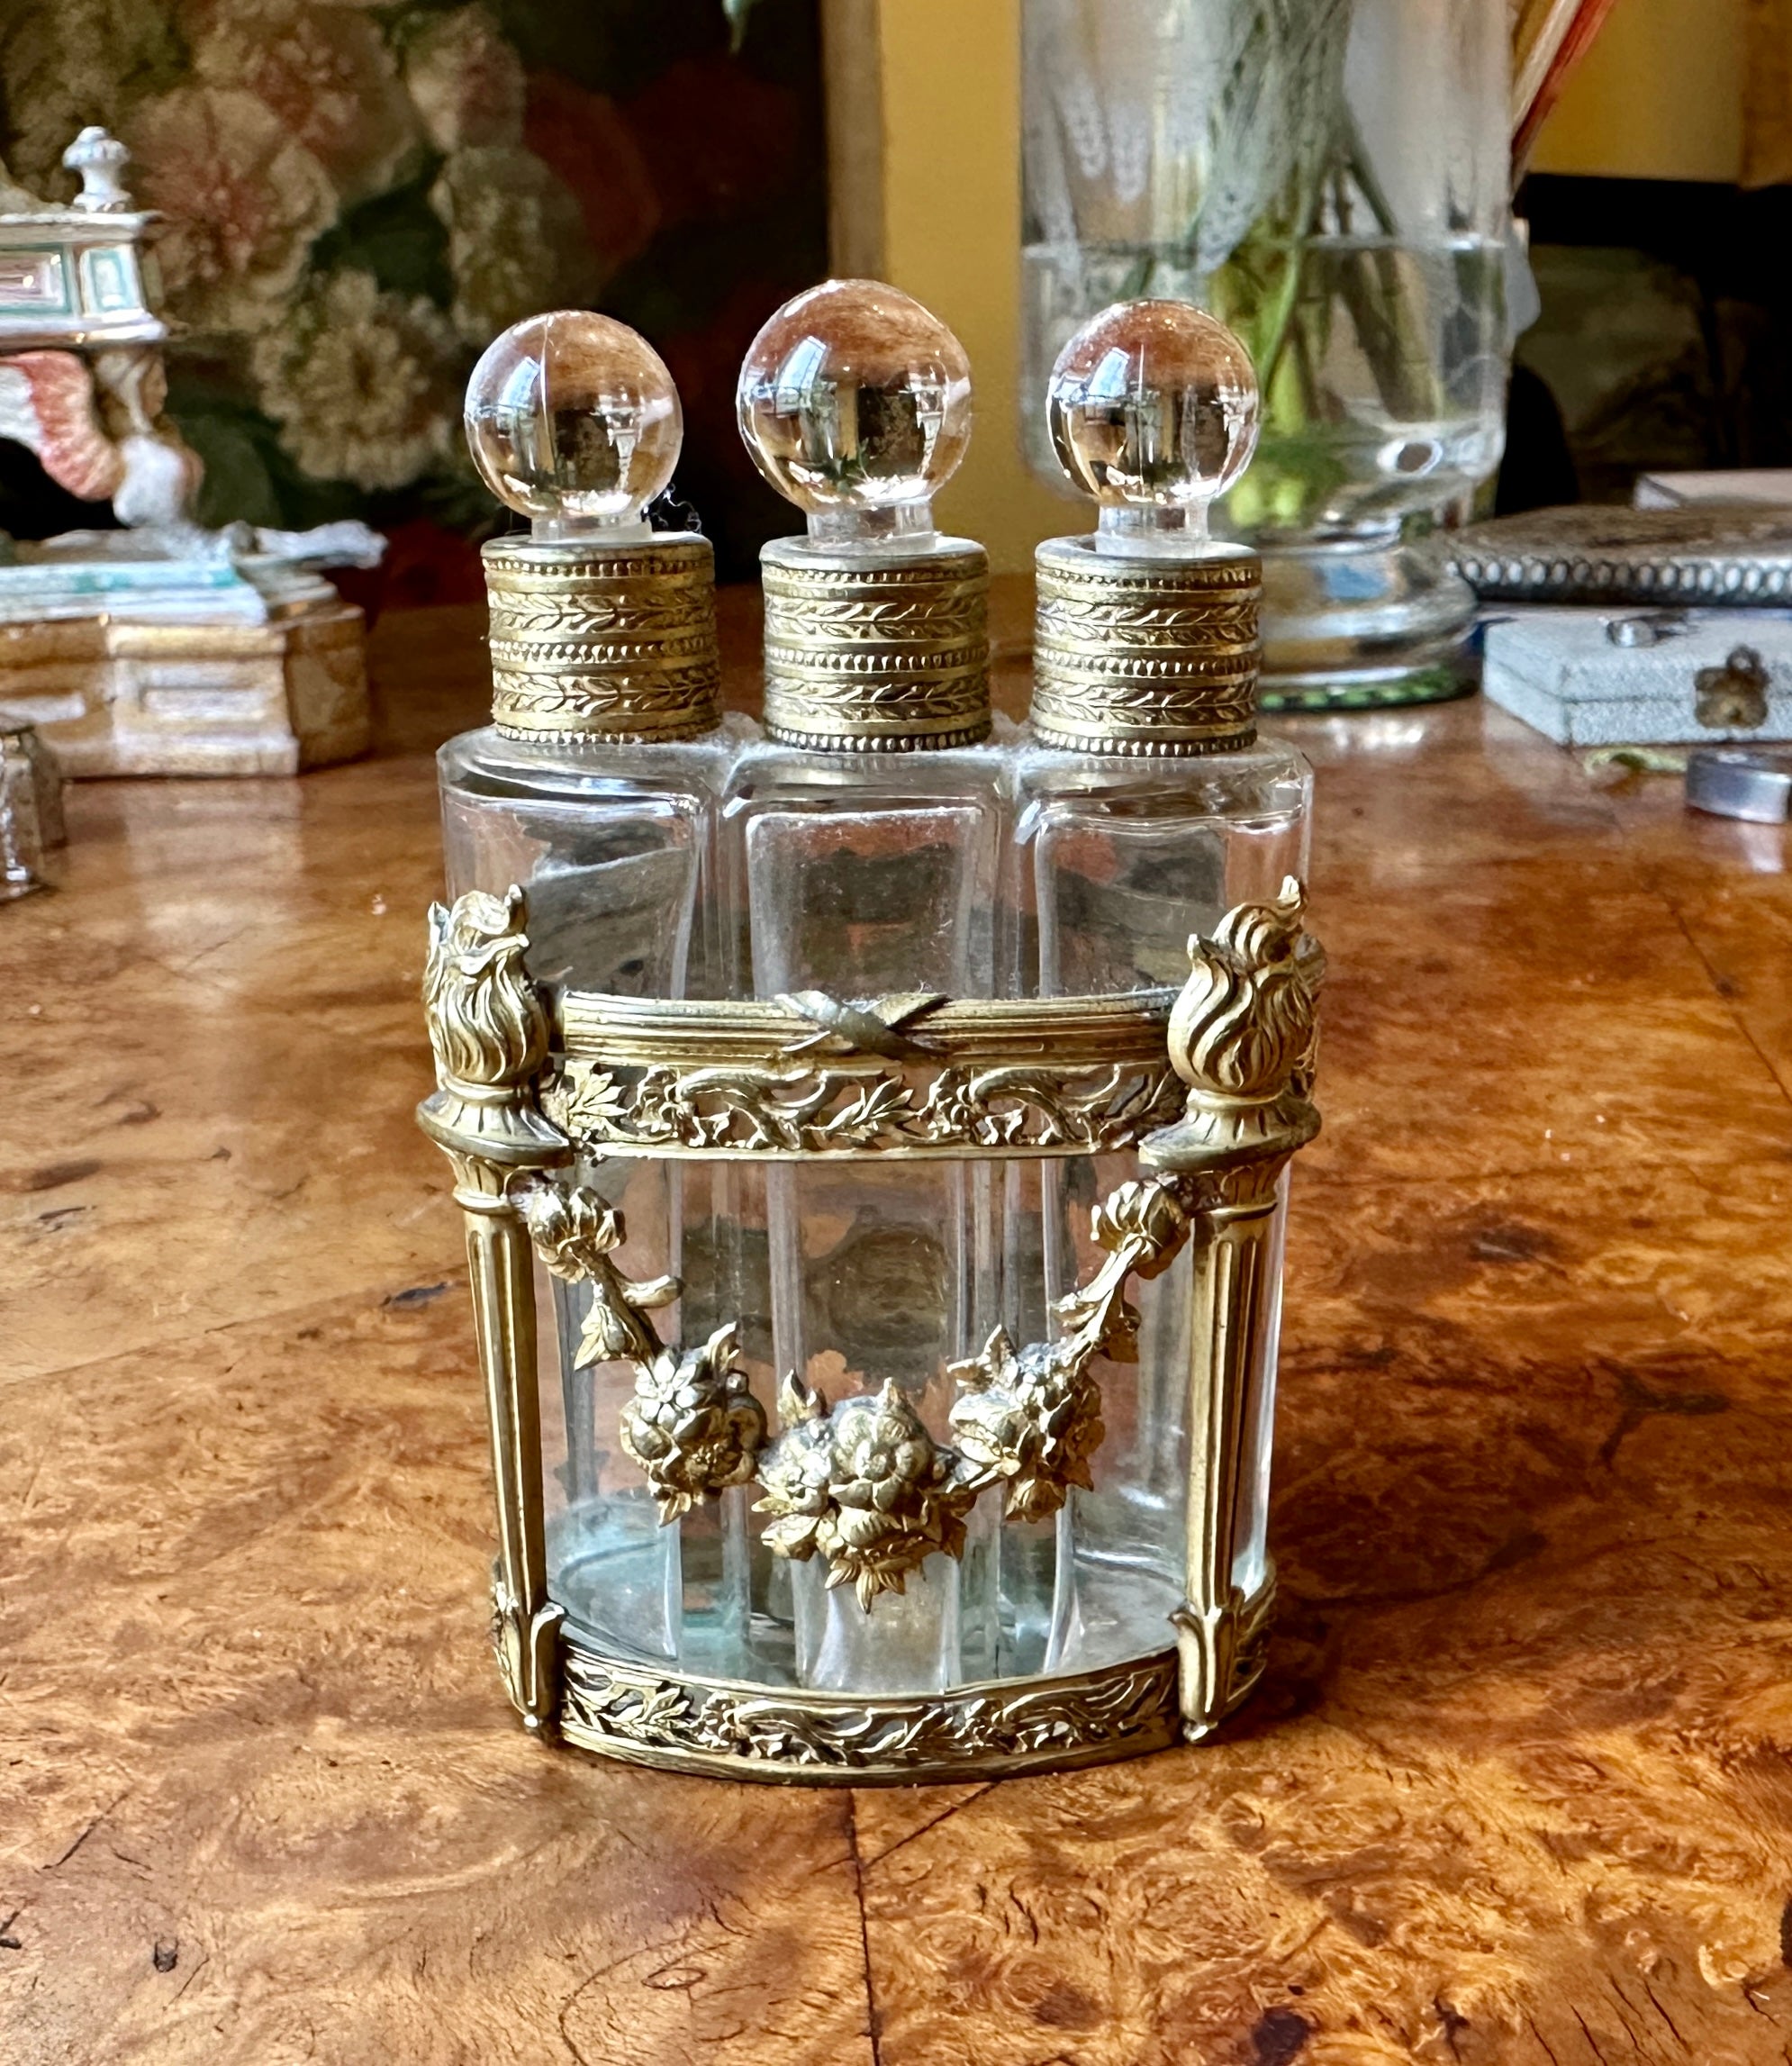 Dies ist eine wunderschöne antike Französisch Bronze Dore dreifach Parfüm Flasche Caddy Set aus ca. 1860-1890.  Die Garnitur besteht aus einem gefundenen, vergoldeten Bronzewagen aus Guss und vergoldeter Bronze mit drei Glasflaschen mit runden